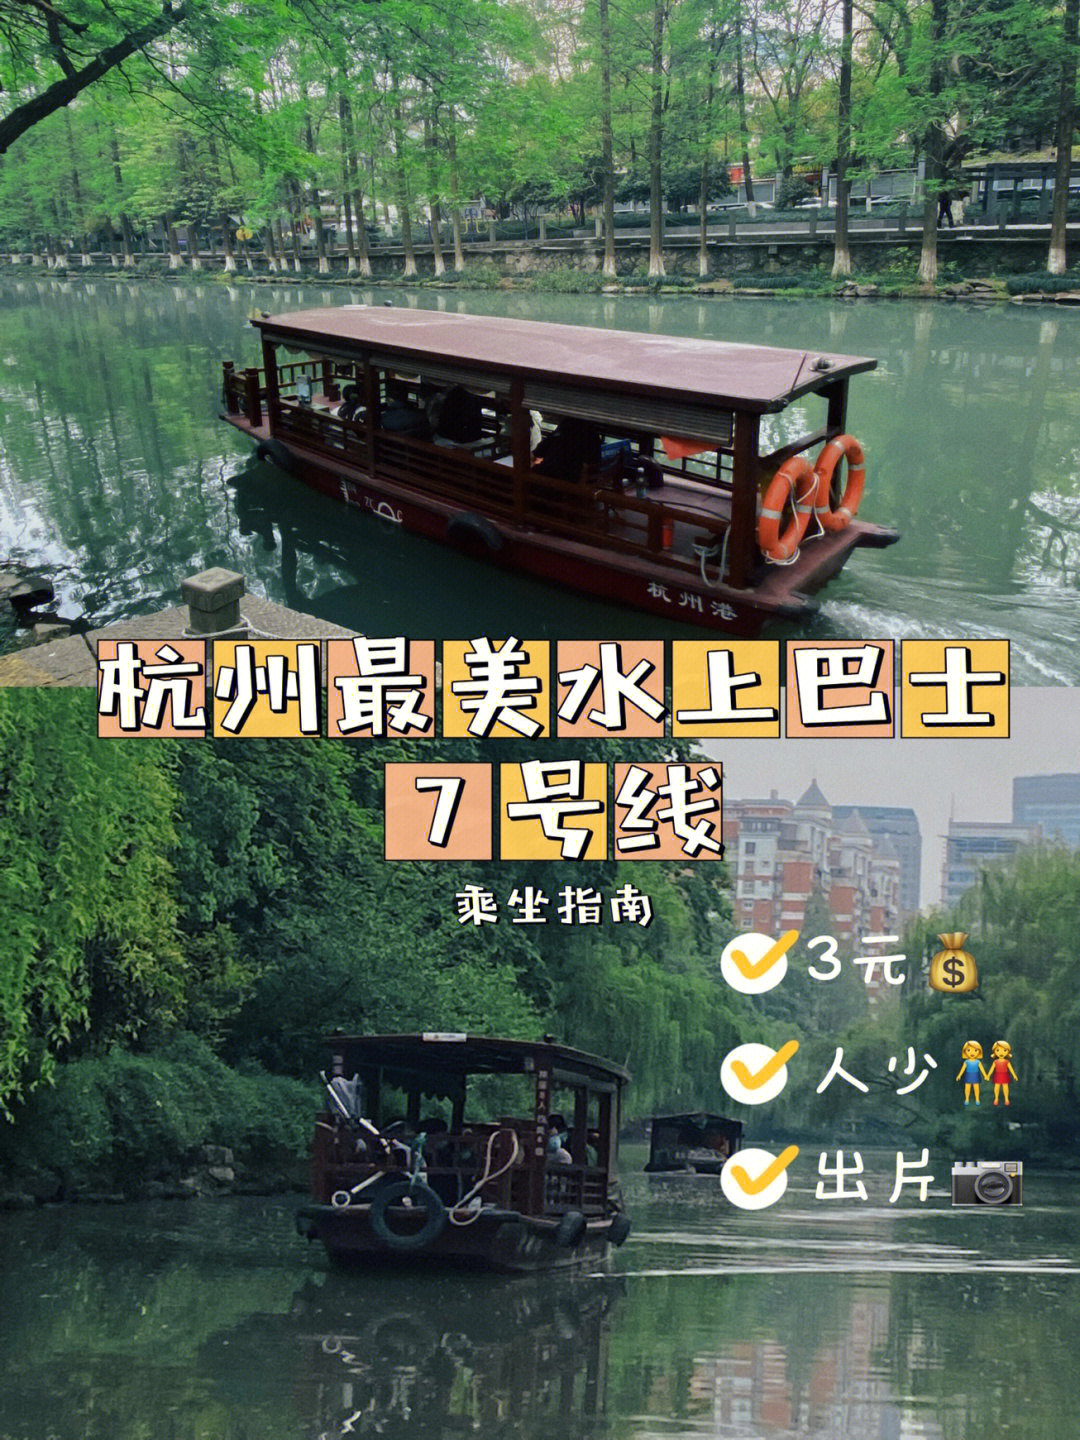 杭州的水上巴士06一共有4条线路,最推荐的就是7号线啦人流量是真的